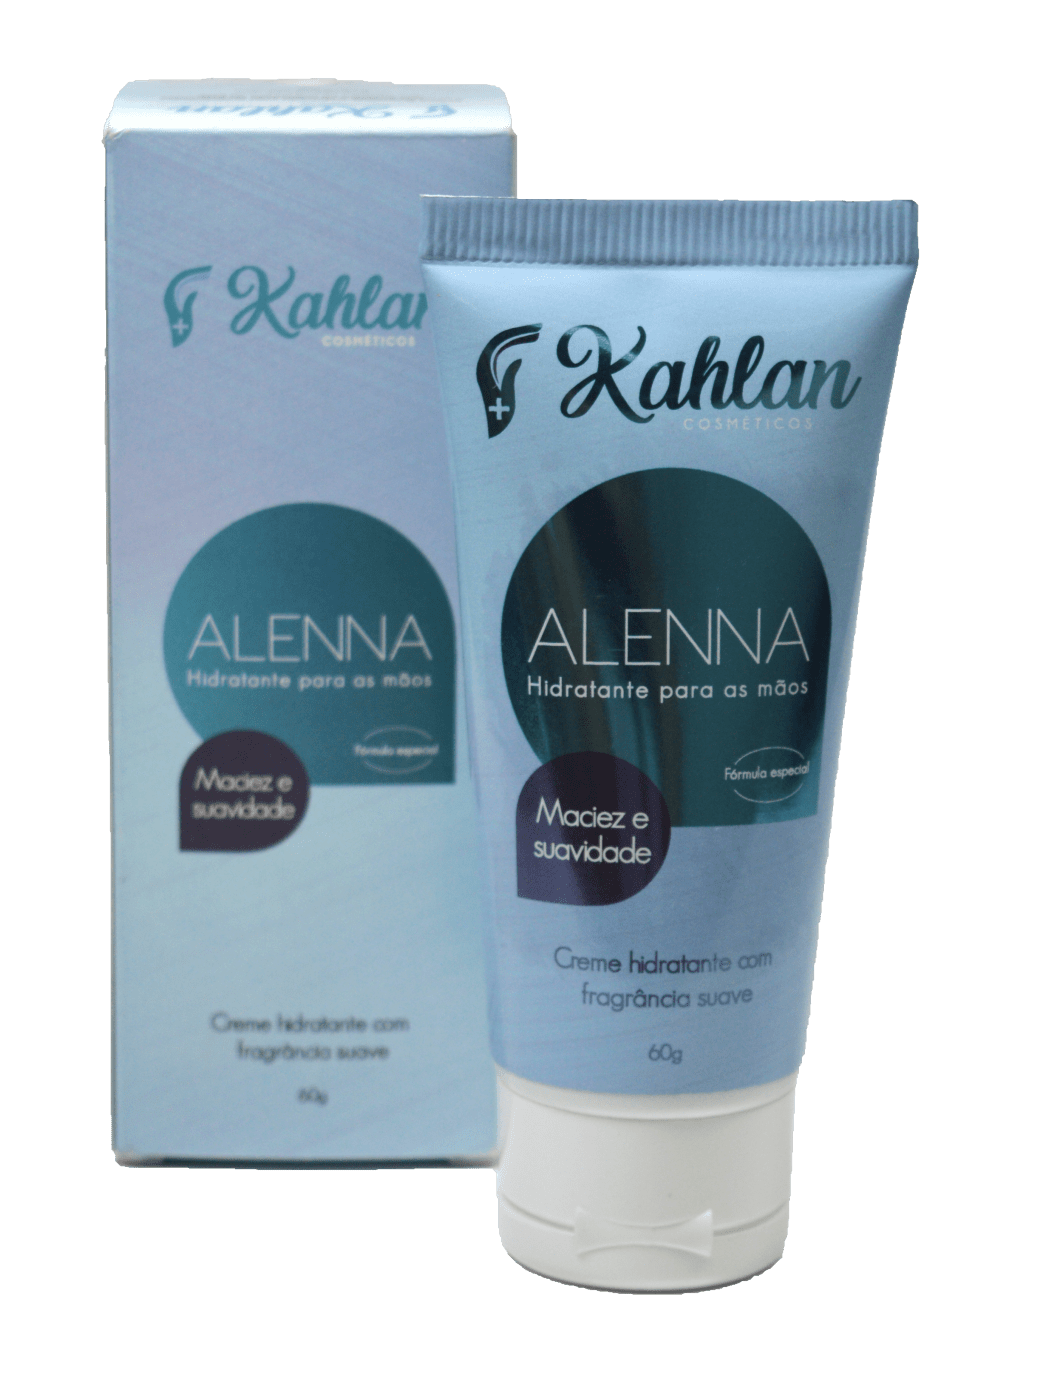 Hidratante Natural para Mãos Alenna - Kahlan.